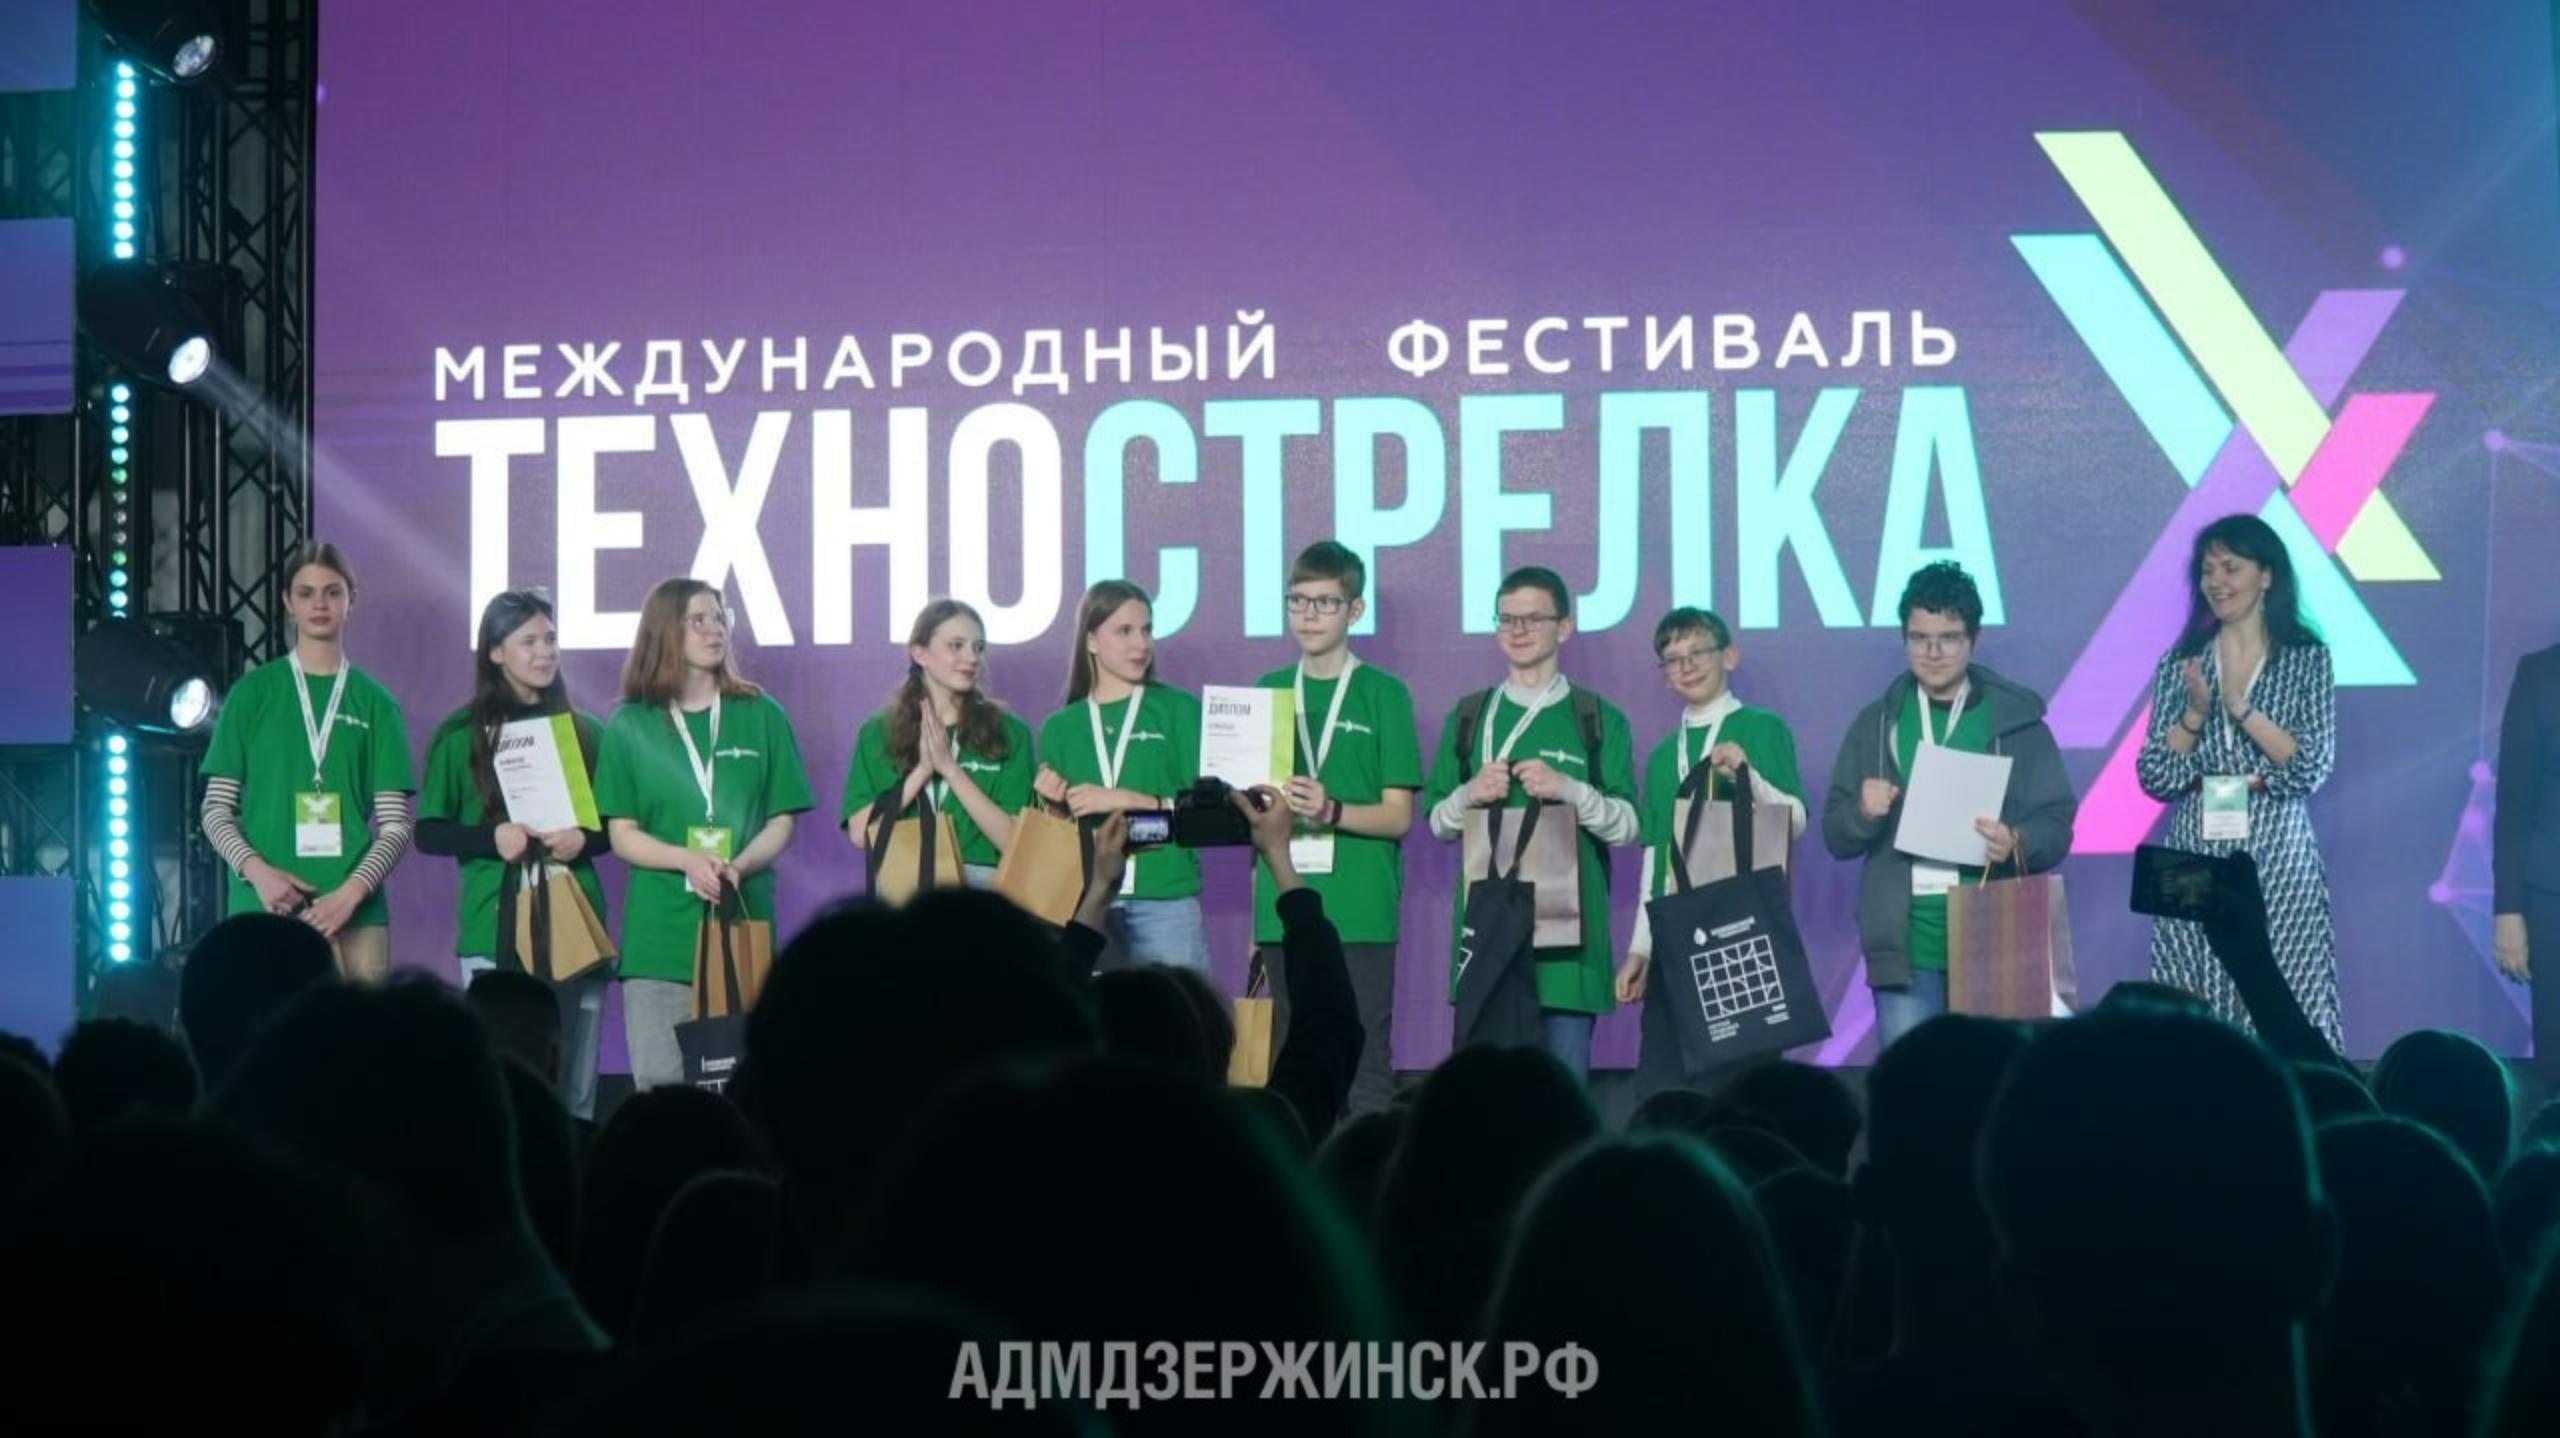 Дзержинские команды стали победителями фестиваля «ТехноСтрелка»